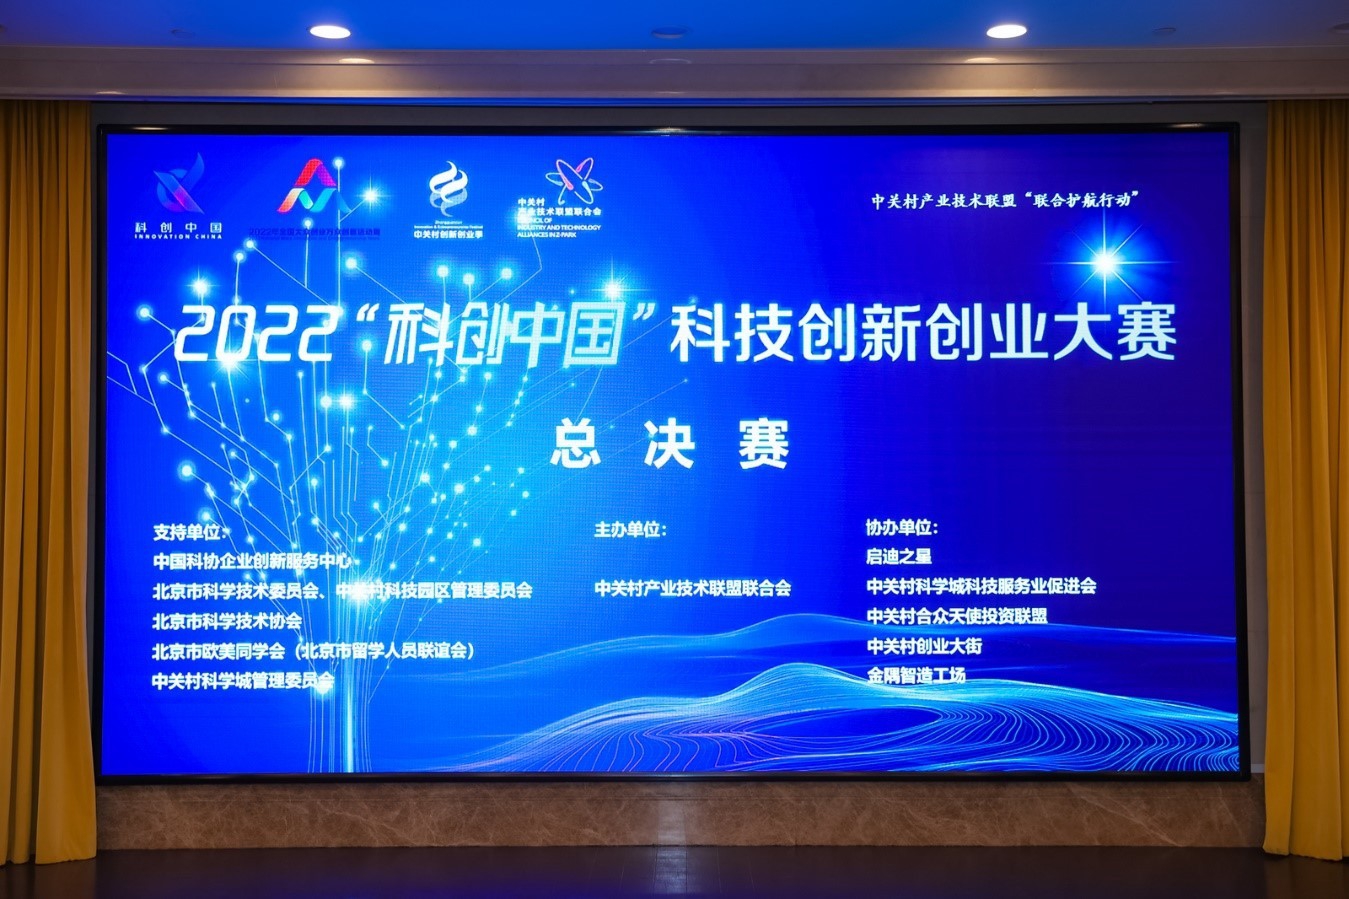 2022“科创中国”科技创新